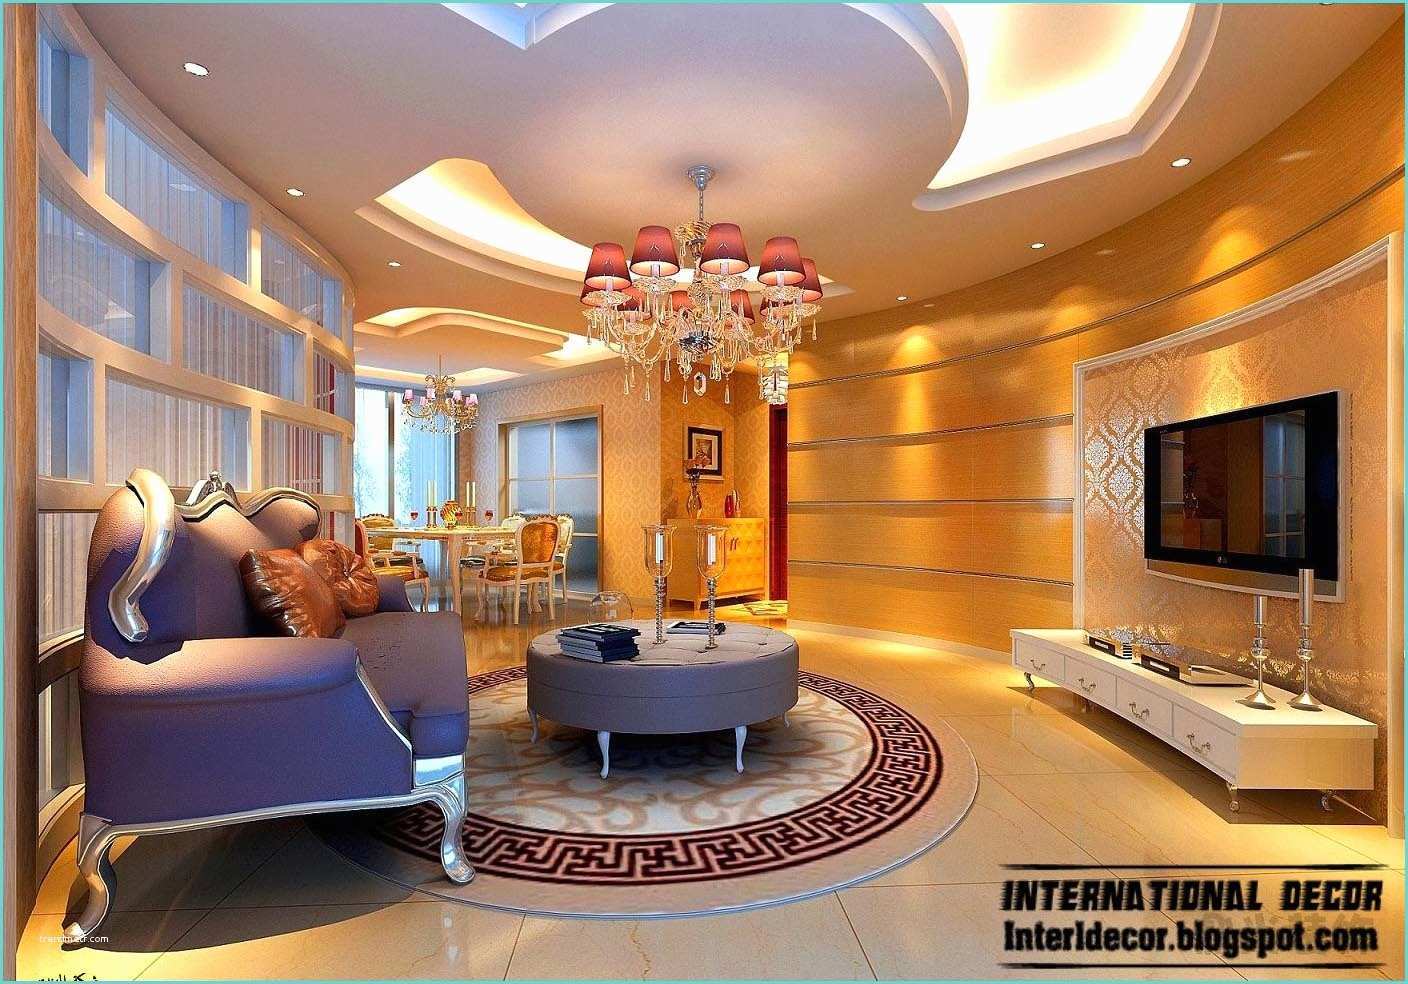 Living Room Pop Ceiling Design Suspended Ceiling Pop Designs for Living Room 2015